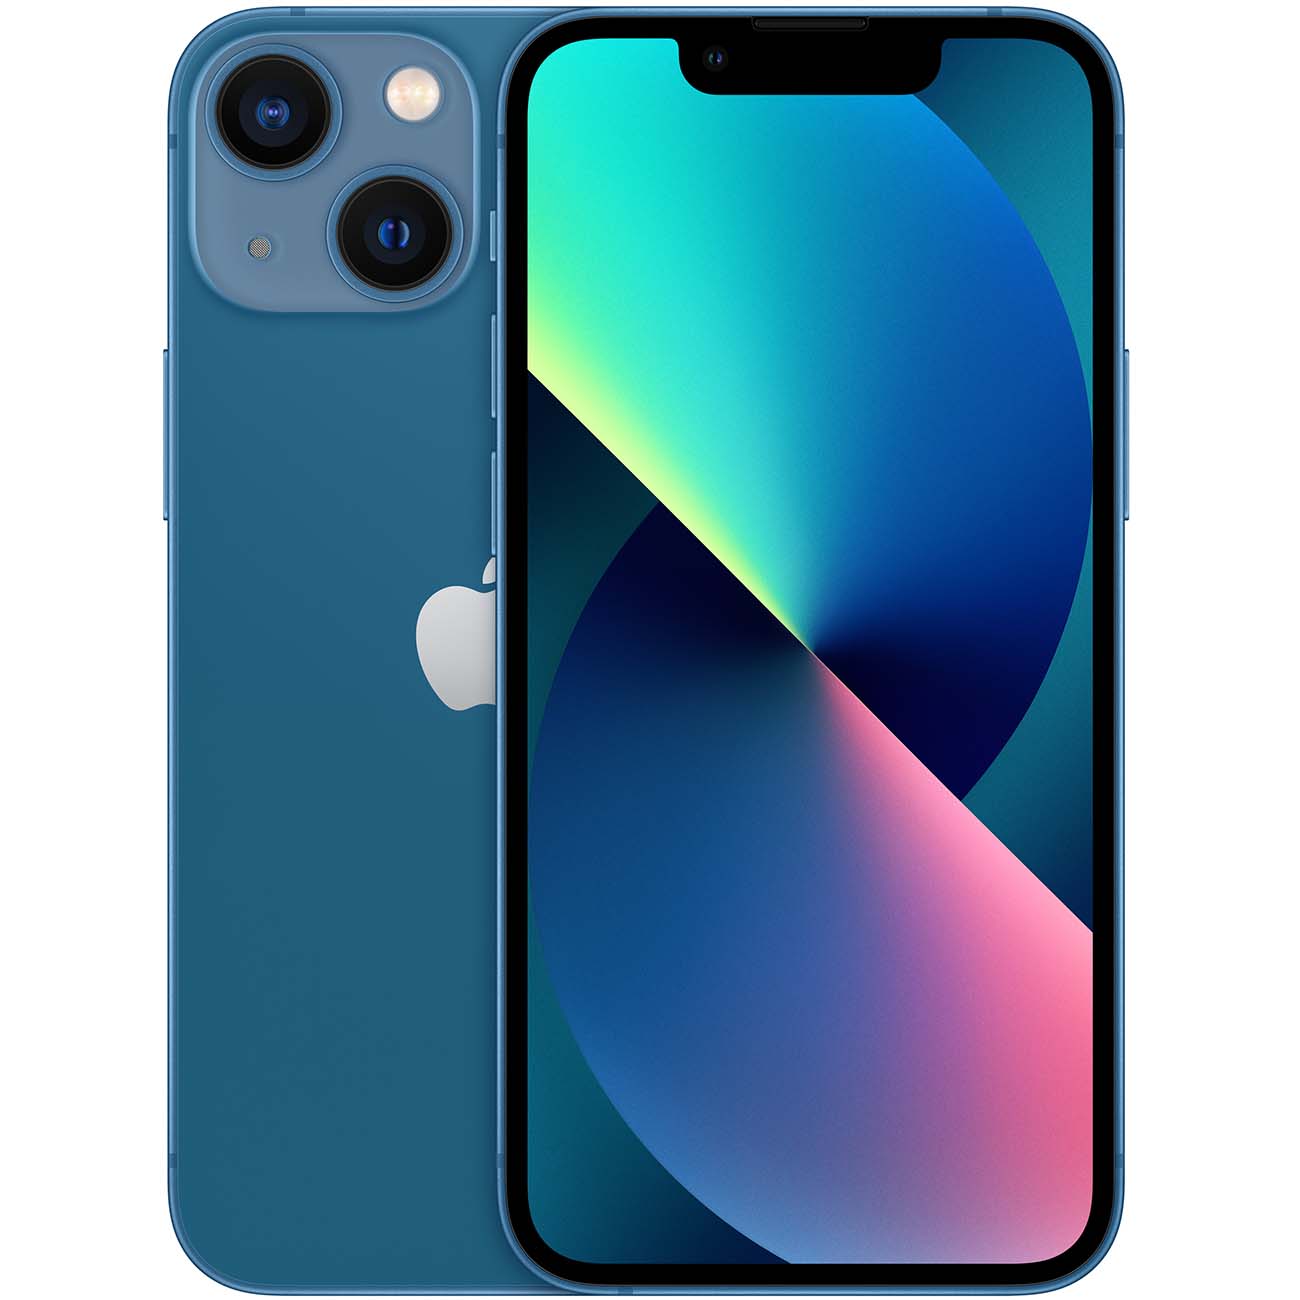 Купить смартфон apple iphone 13 mini 256gb blue Apple iPhone 13 mini в официальном магазине Apple, Samsung, Xiaomi. iPixel.ru Купить, заказ, кредит, рассрочка, отзывы,  характеристики, цена,  фотографии, в подарок.